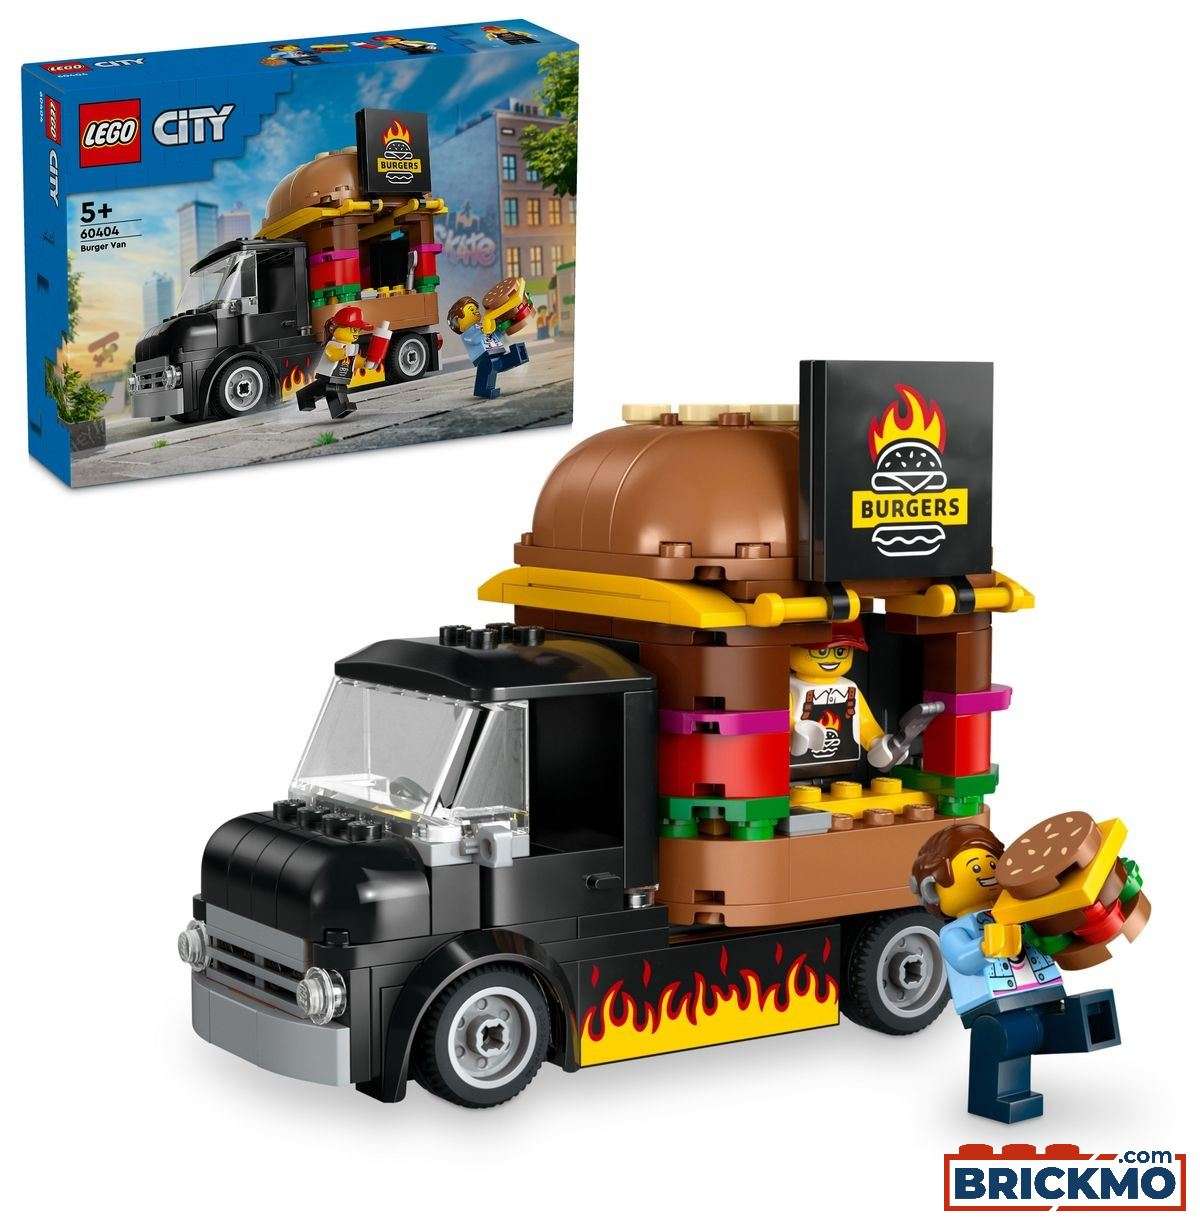 LEGO City 60404 Hamburgertruck 60404